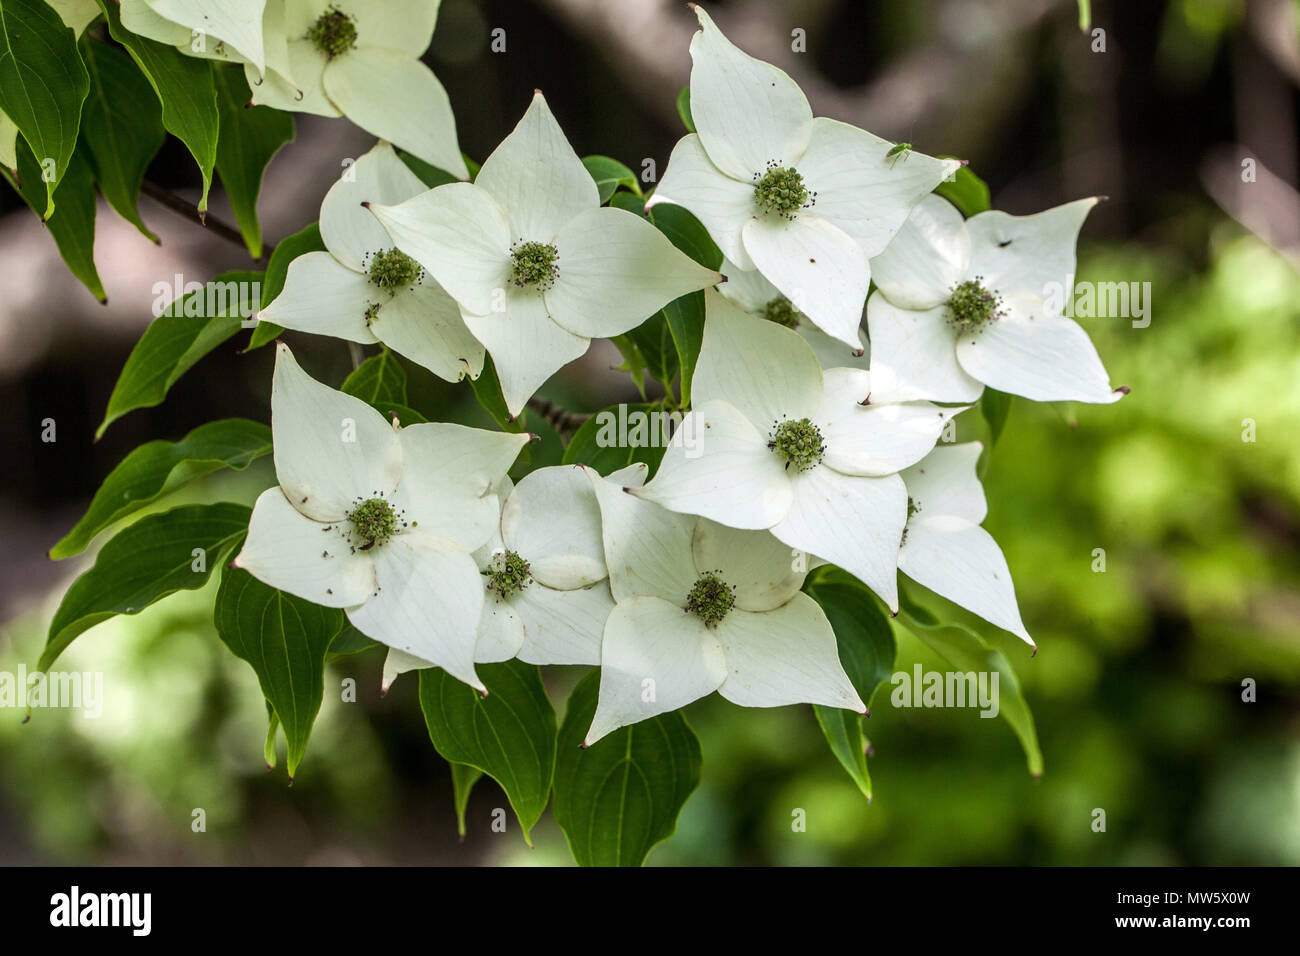 Dogwood, Cornus kousa 'Milchstraße' Weiße Blüten Nahaufnahme Blühende Pflanze im Garten, Ein grünlicher Farbton Stockfoto